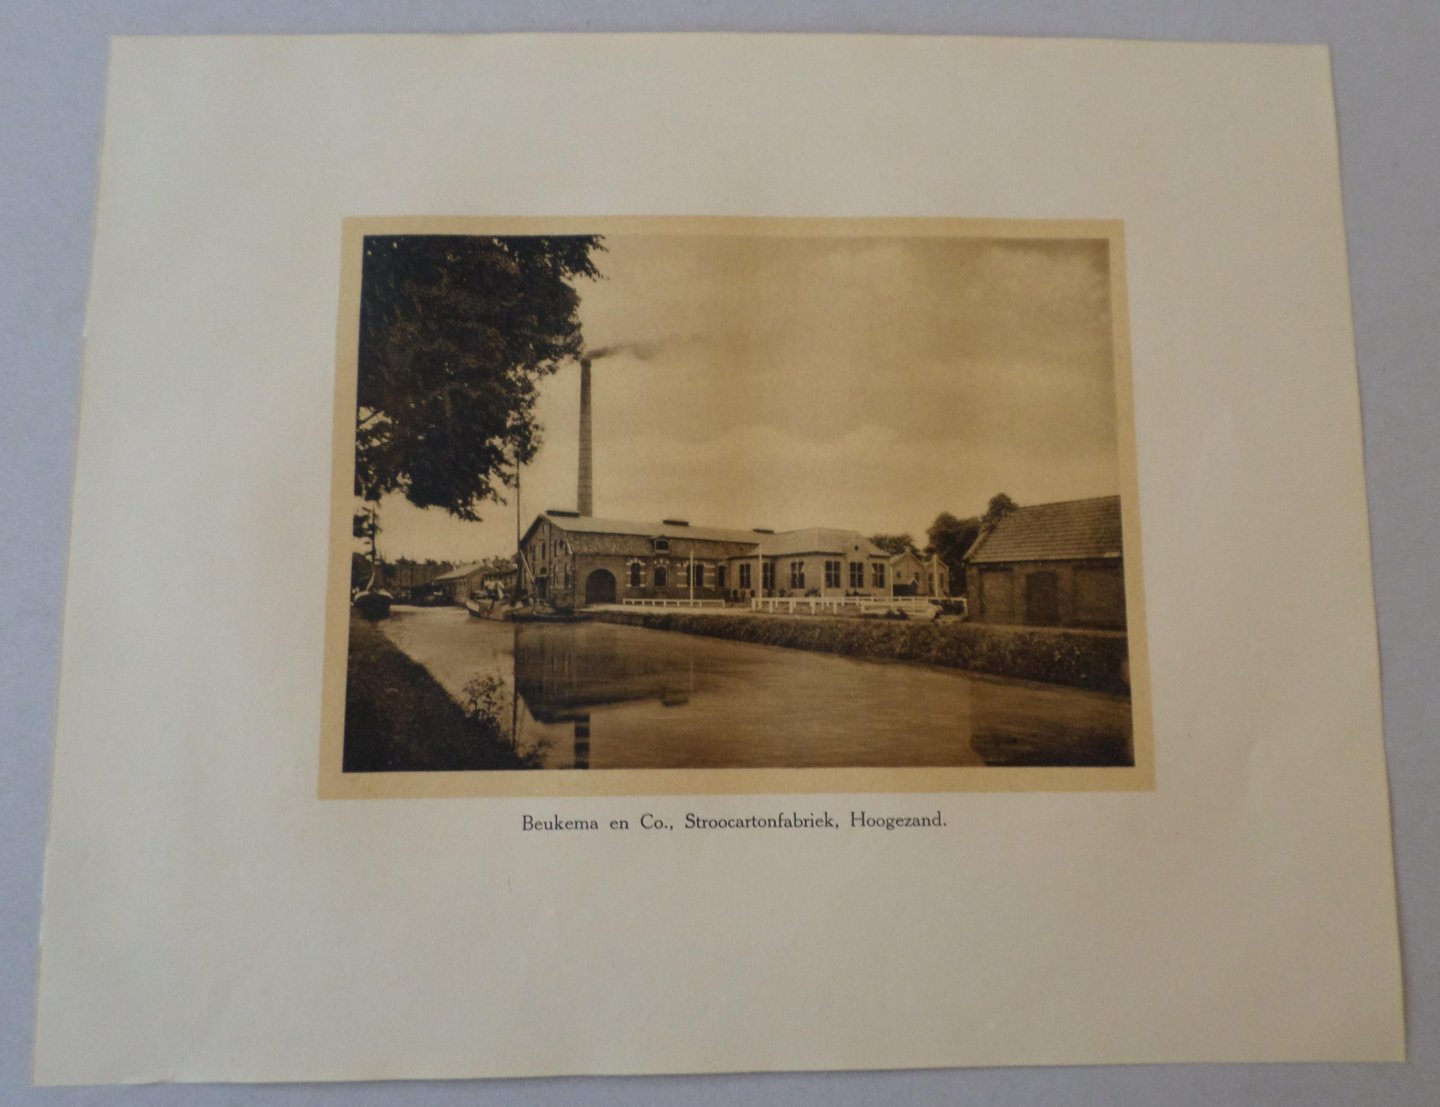 [1005] Afbeelding Beukema en Co., Stroocartonfabriek, Hoogezand. - Afbeelding Beukema en Co., Stroocartonfabriek, Hoogezand.